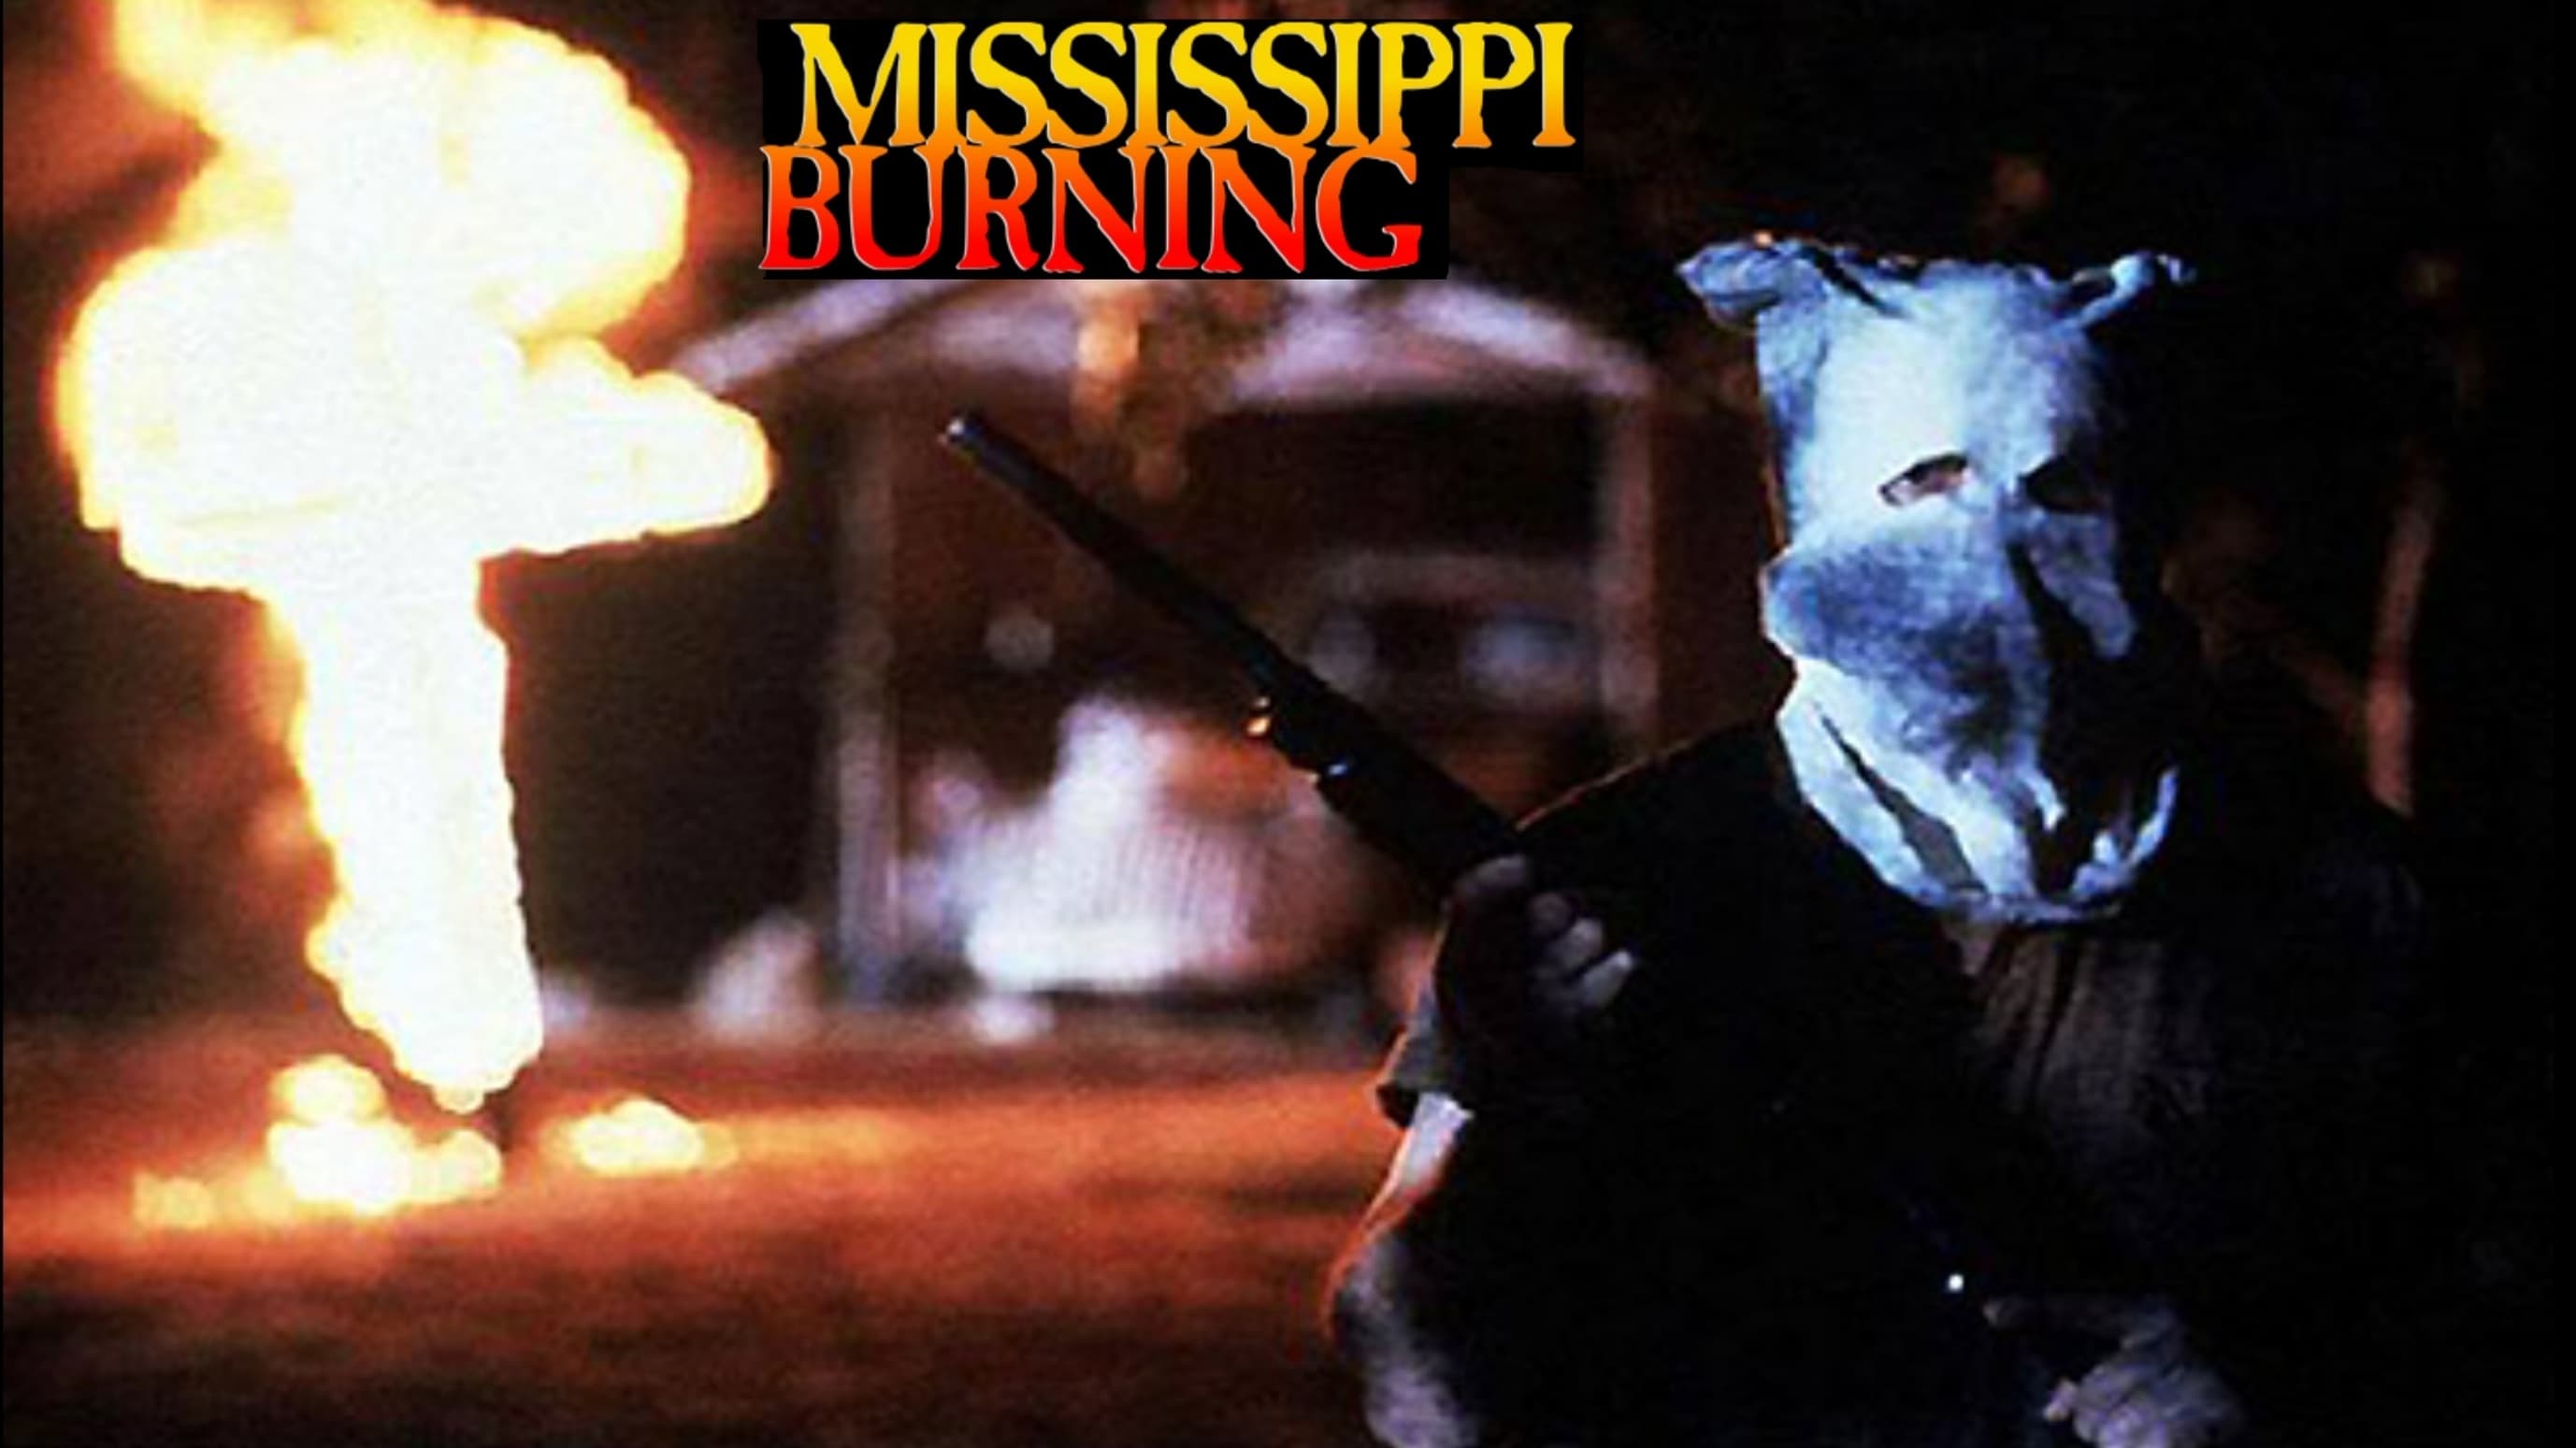 Mississippi Burning